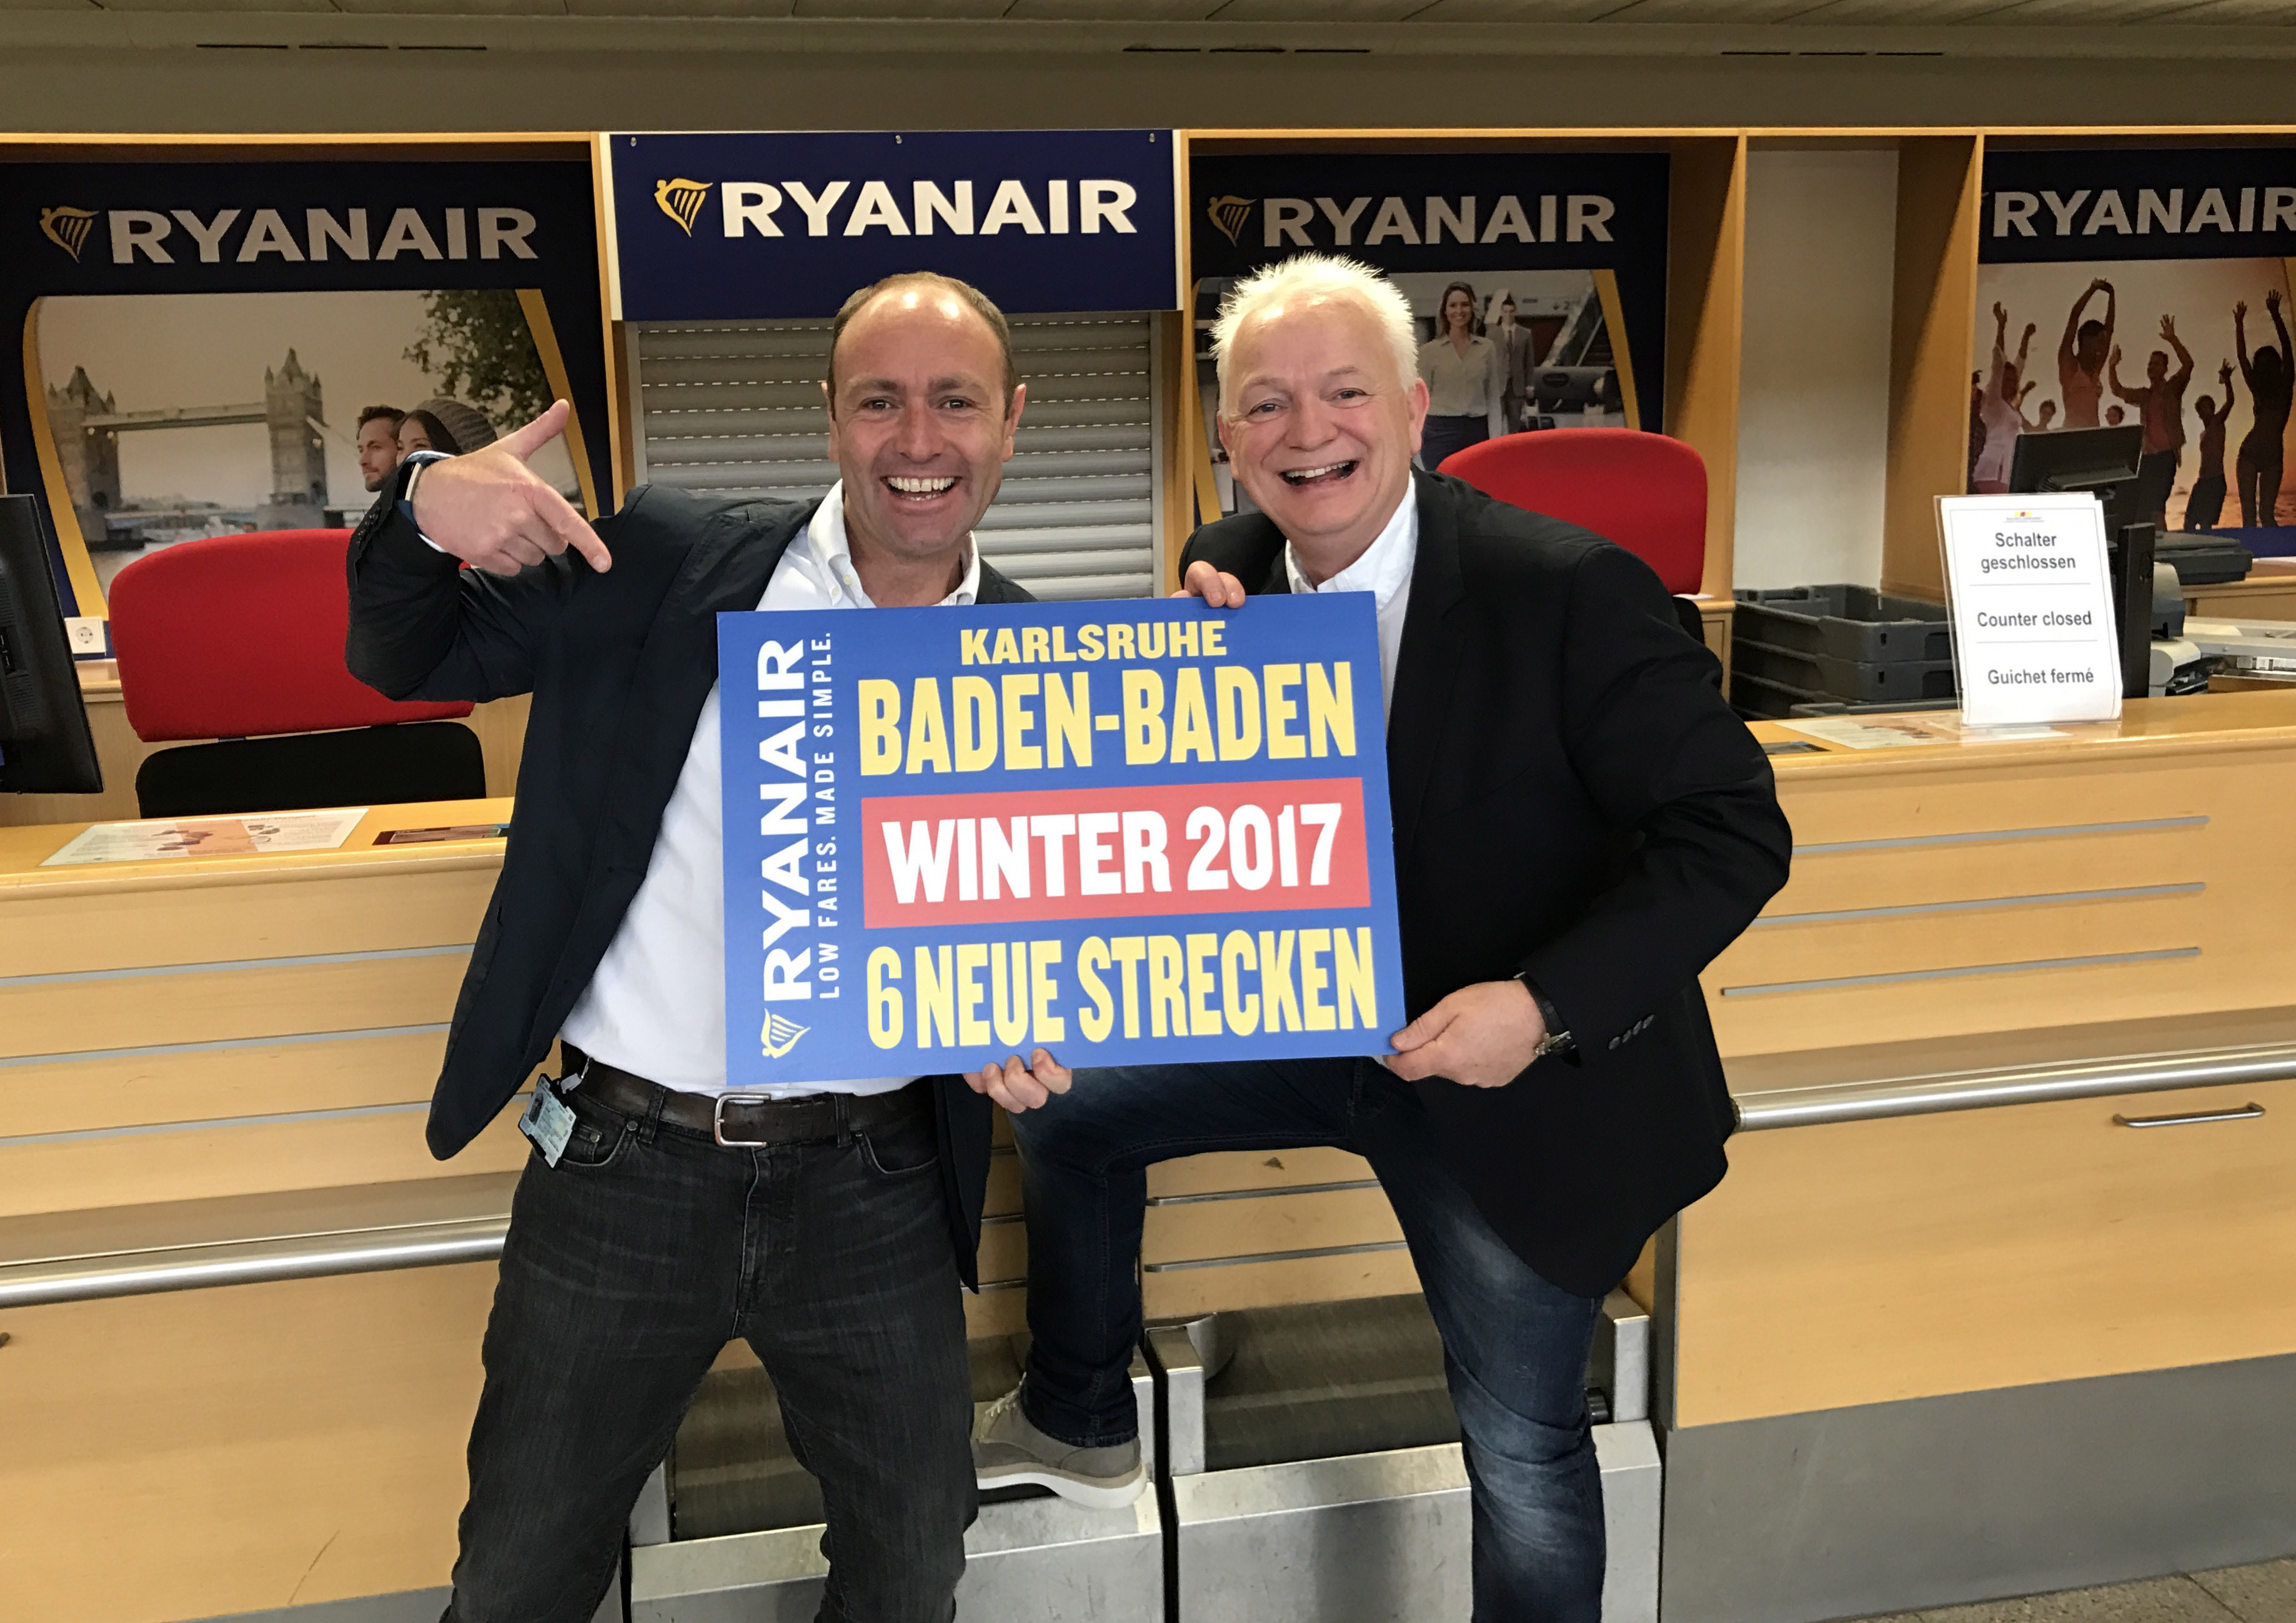 Ryanair Startet Neue Strecke Von Karlsruhe/Baden-Baden Nach Sevilla